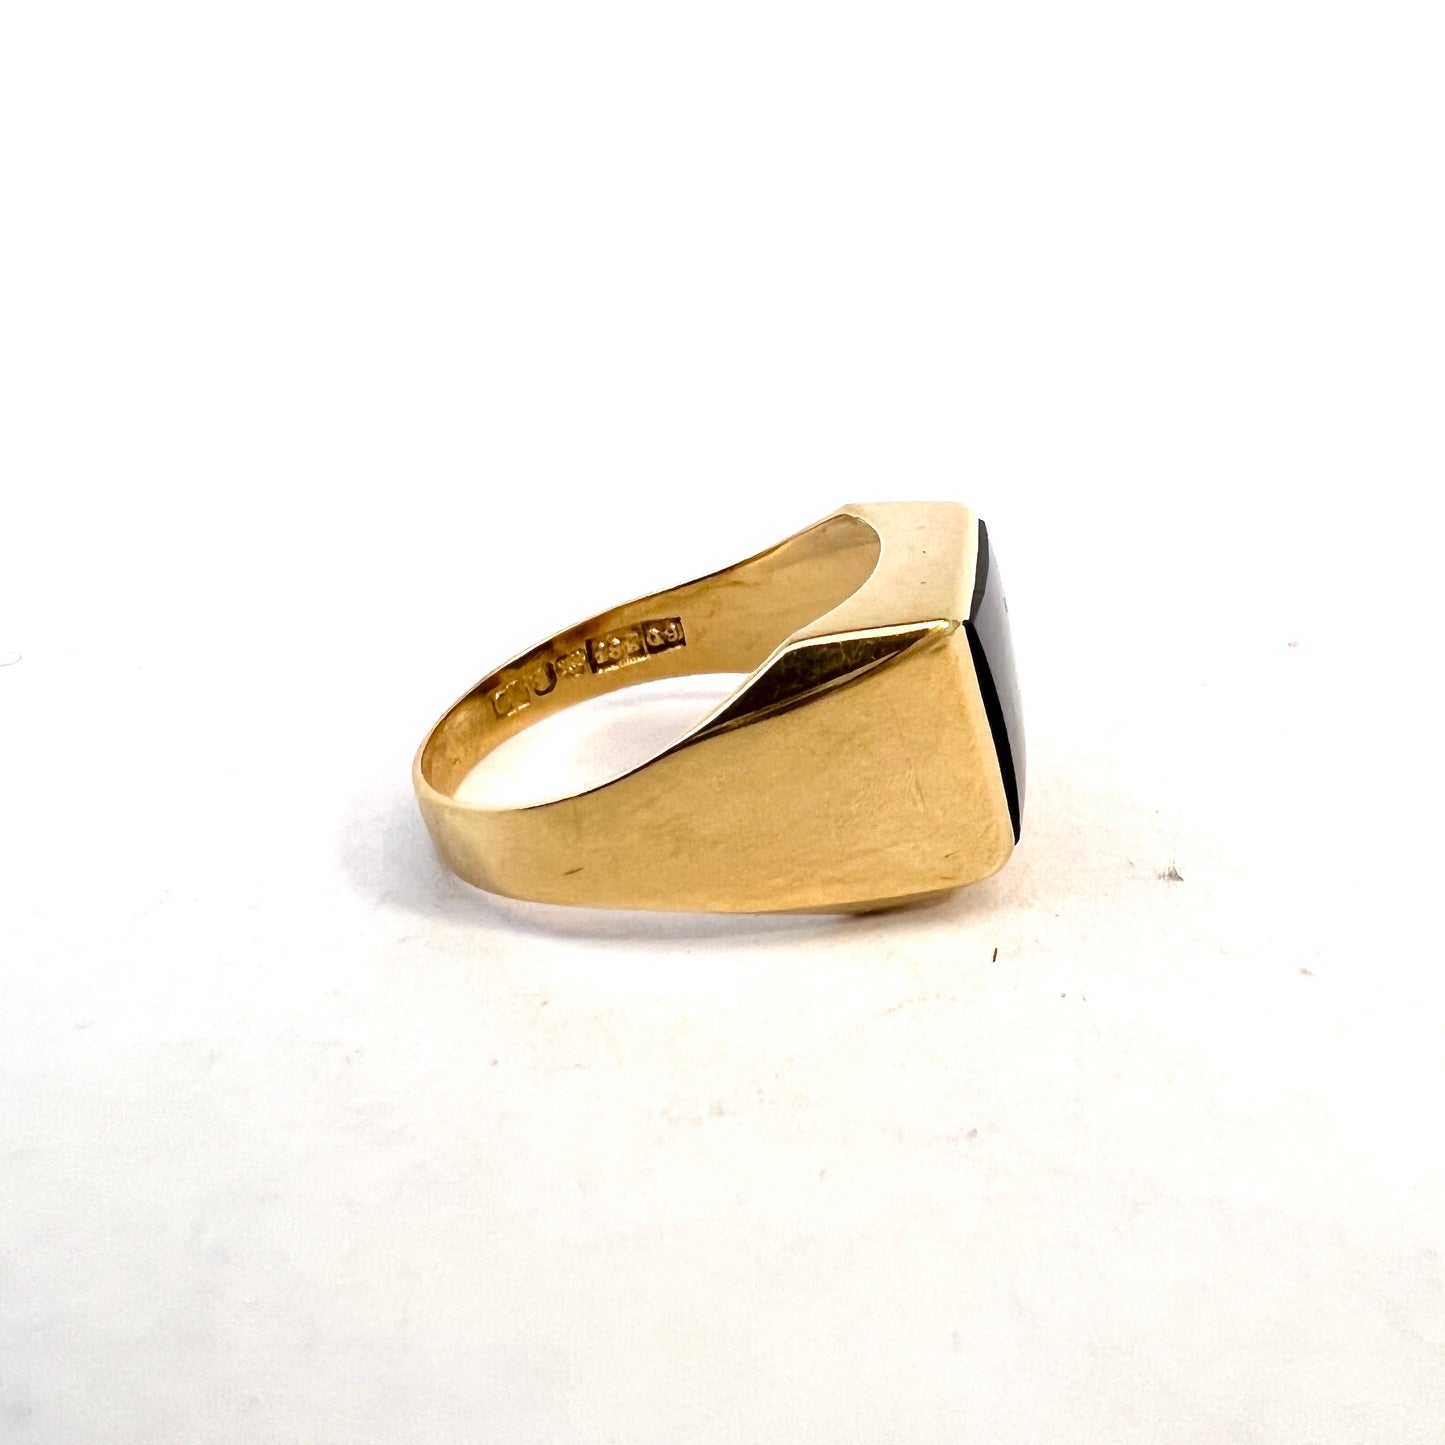 Kaplan, Sweden 1966. Vintage 18k Gold Onyx Signet Ring.